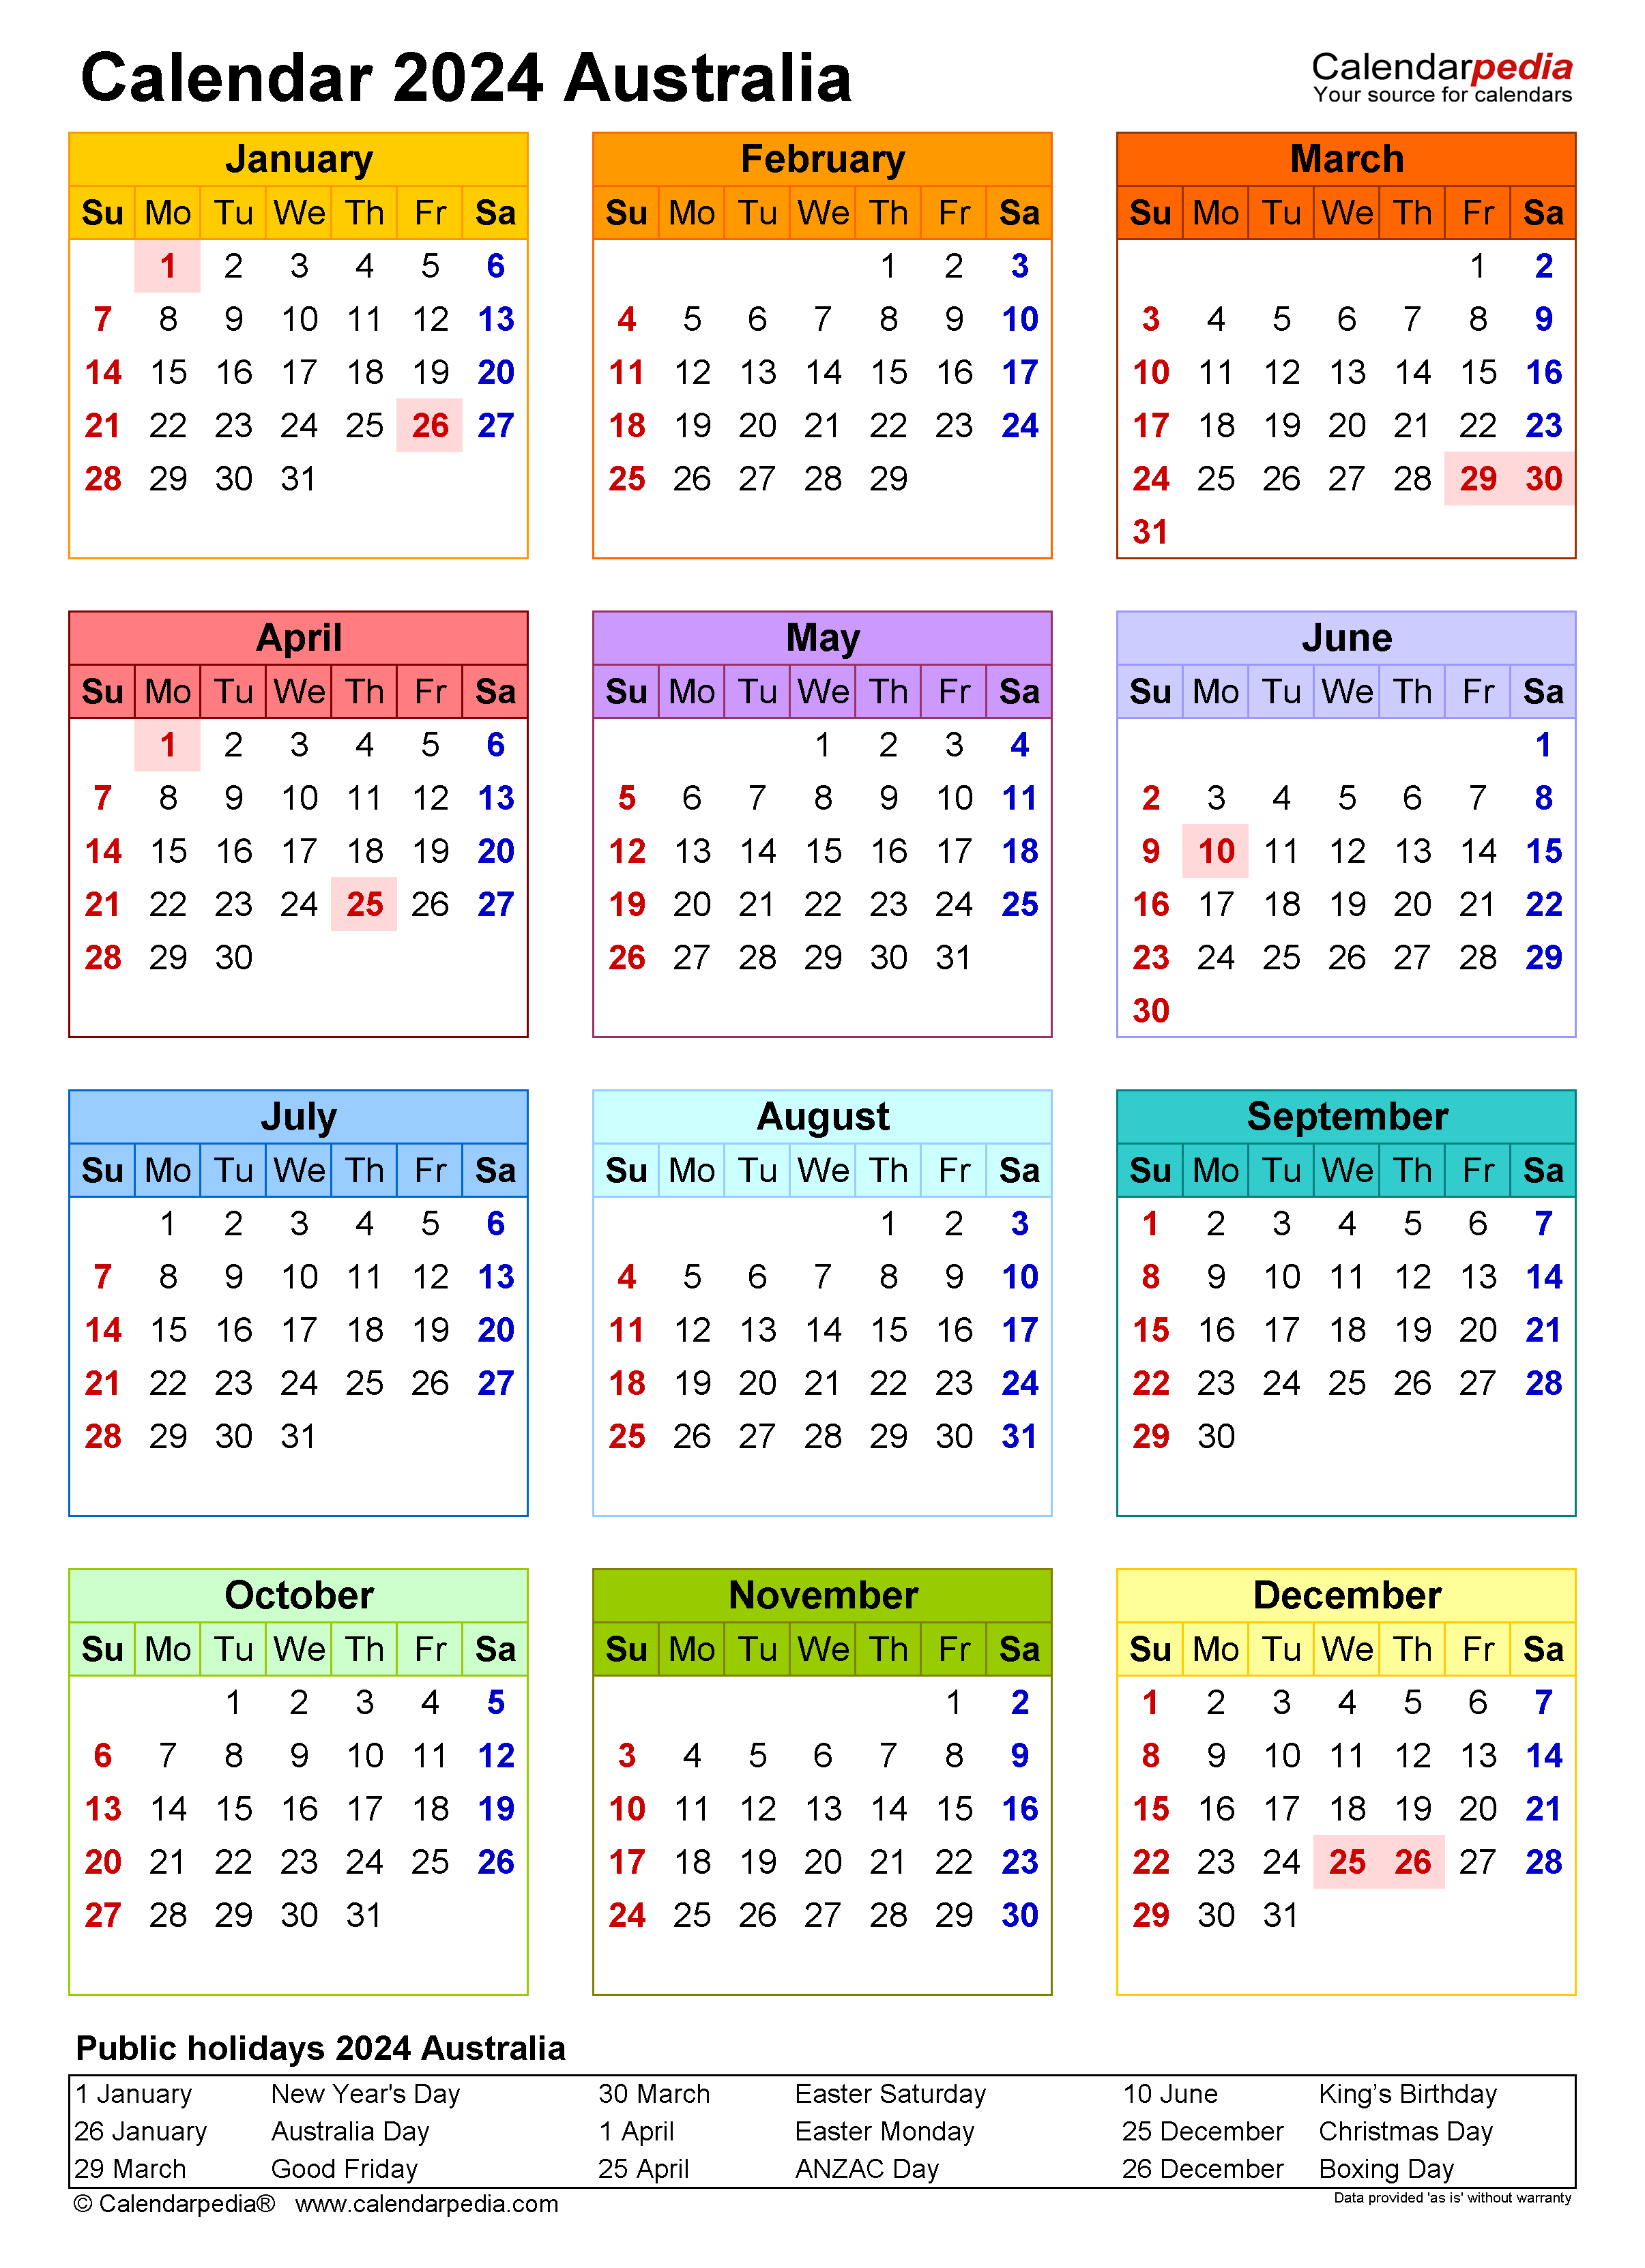 Free Printable 2024 Calendar Printable Calendar 2023 - Free Printable 2024 Calendar With Holidays Australia